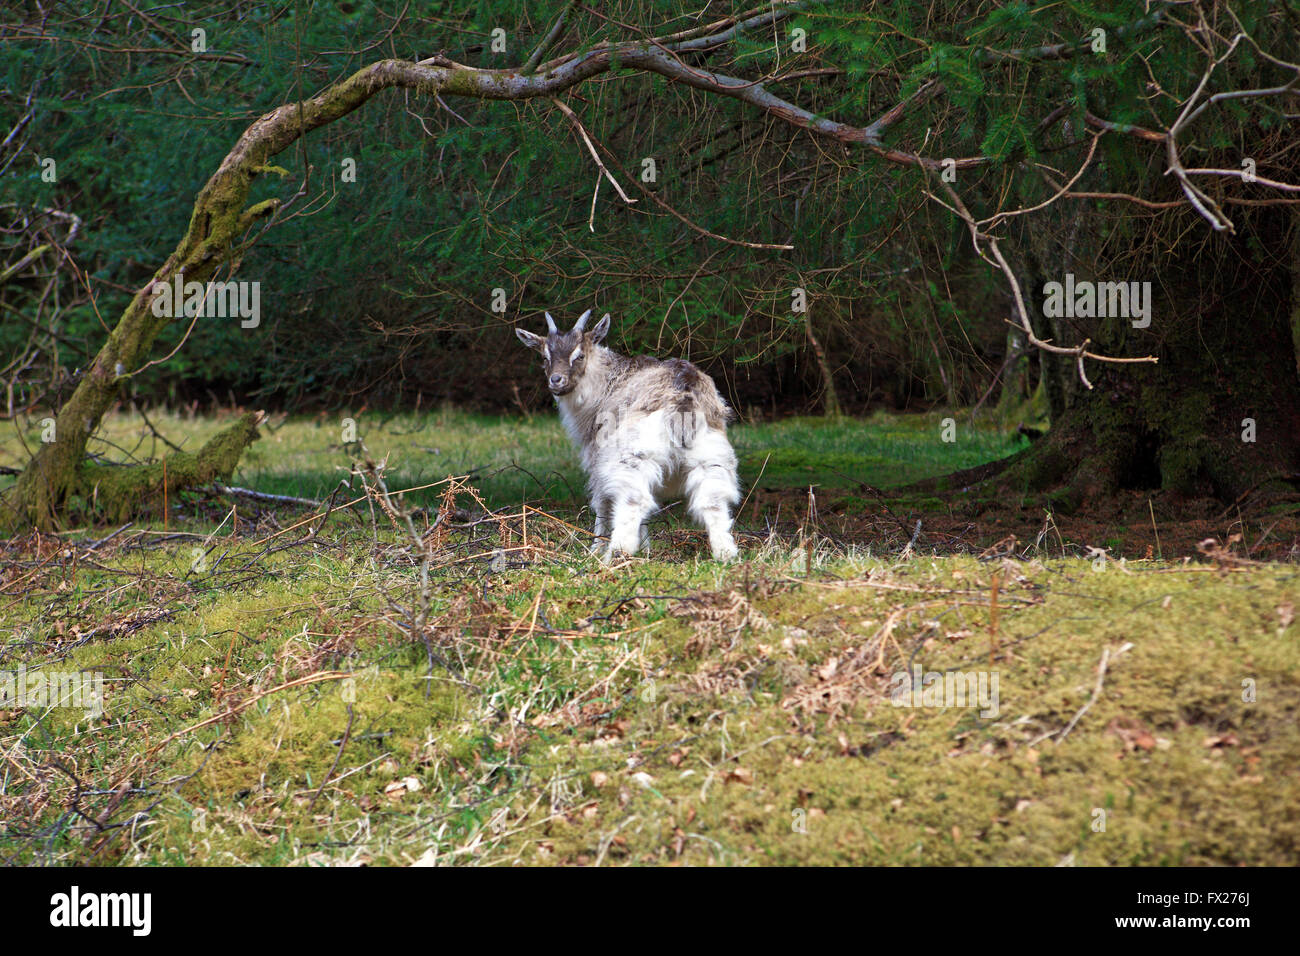 Wild billy goat in the Trossachs of Scotland on the B829 road, Aberfoyle to Stronachlachar Stock Photo